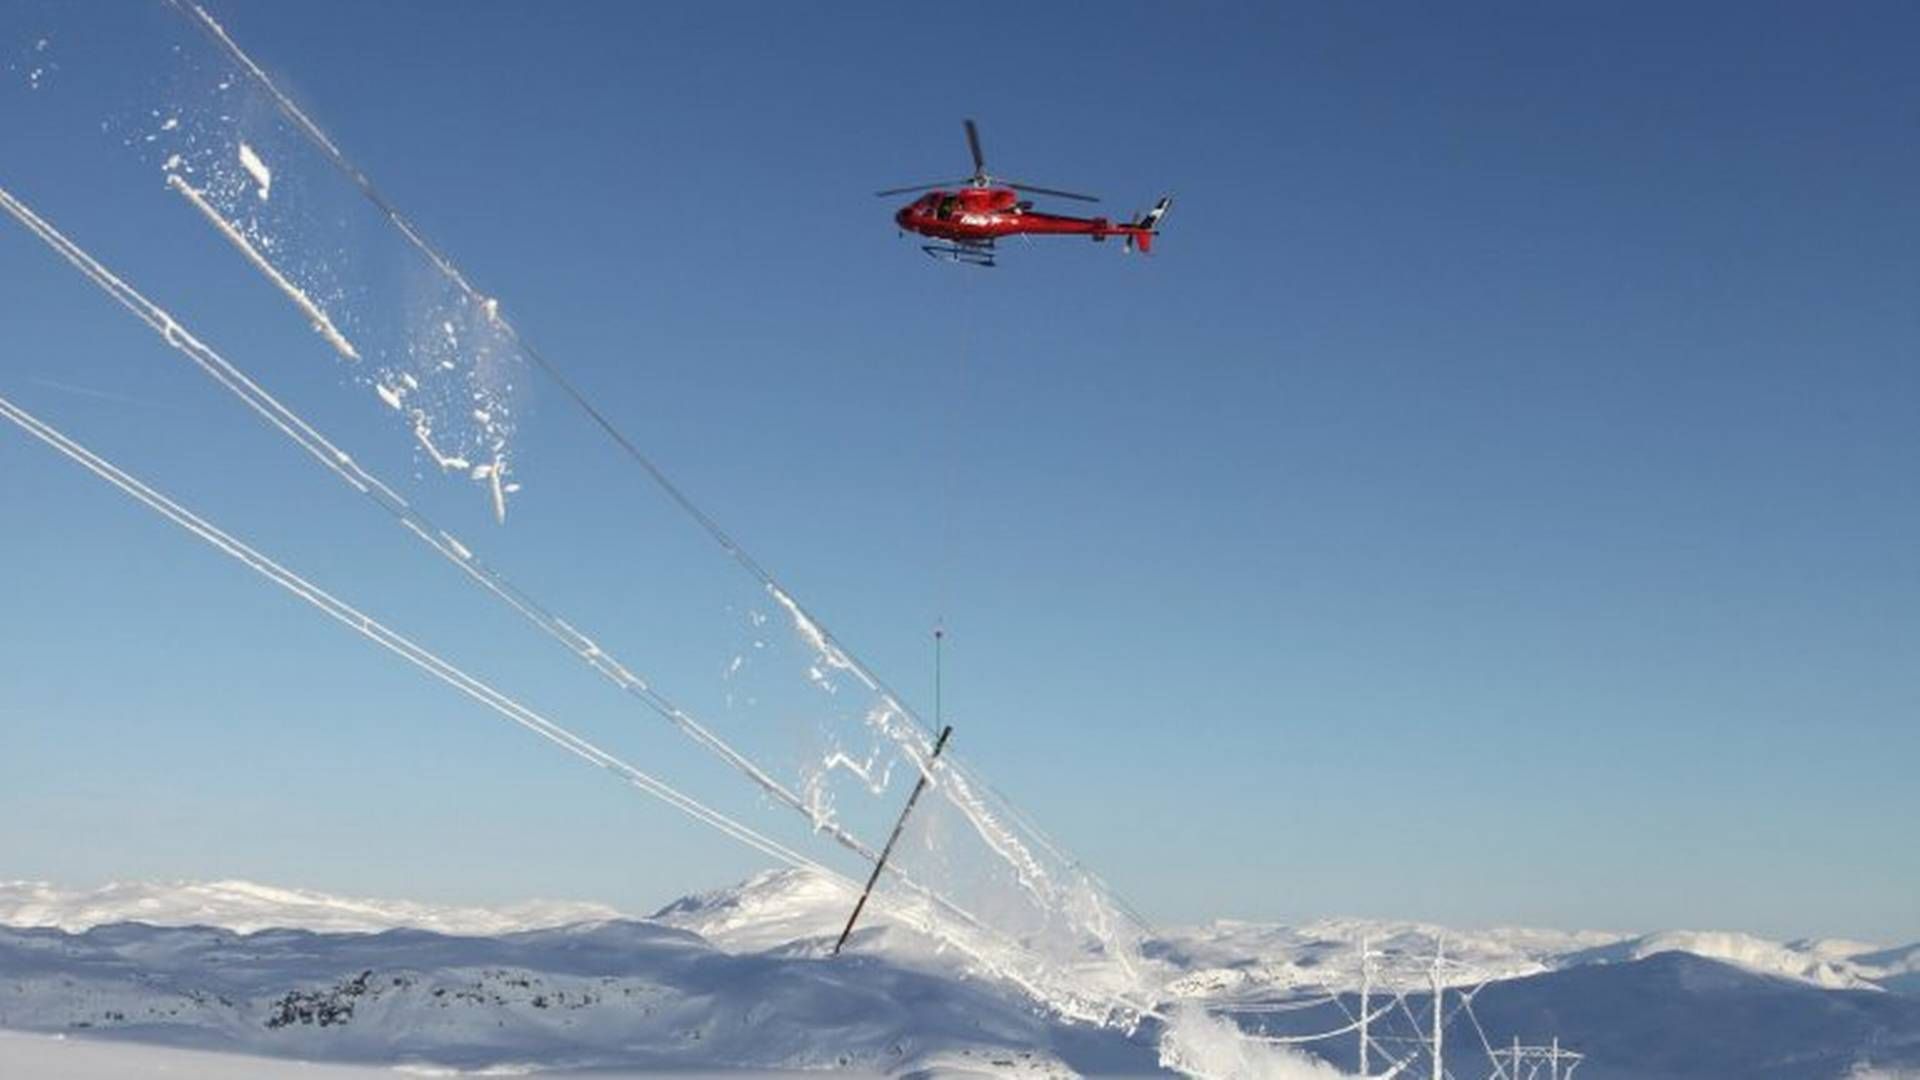 I dag fjernes ising ved at et helikopter med en dinglende tømmerstokk slår mot ledningene, en metode som innebærer risiko både for personell og utstyr. Icebox har sett på muligheter med drone og roboter. | Foto: Statnett